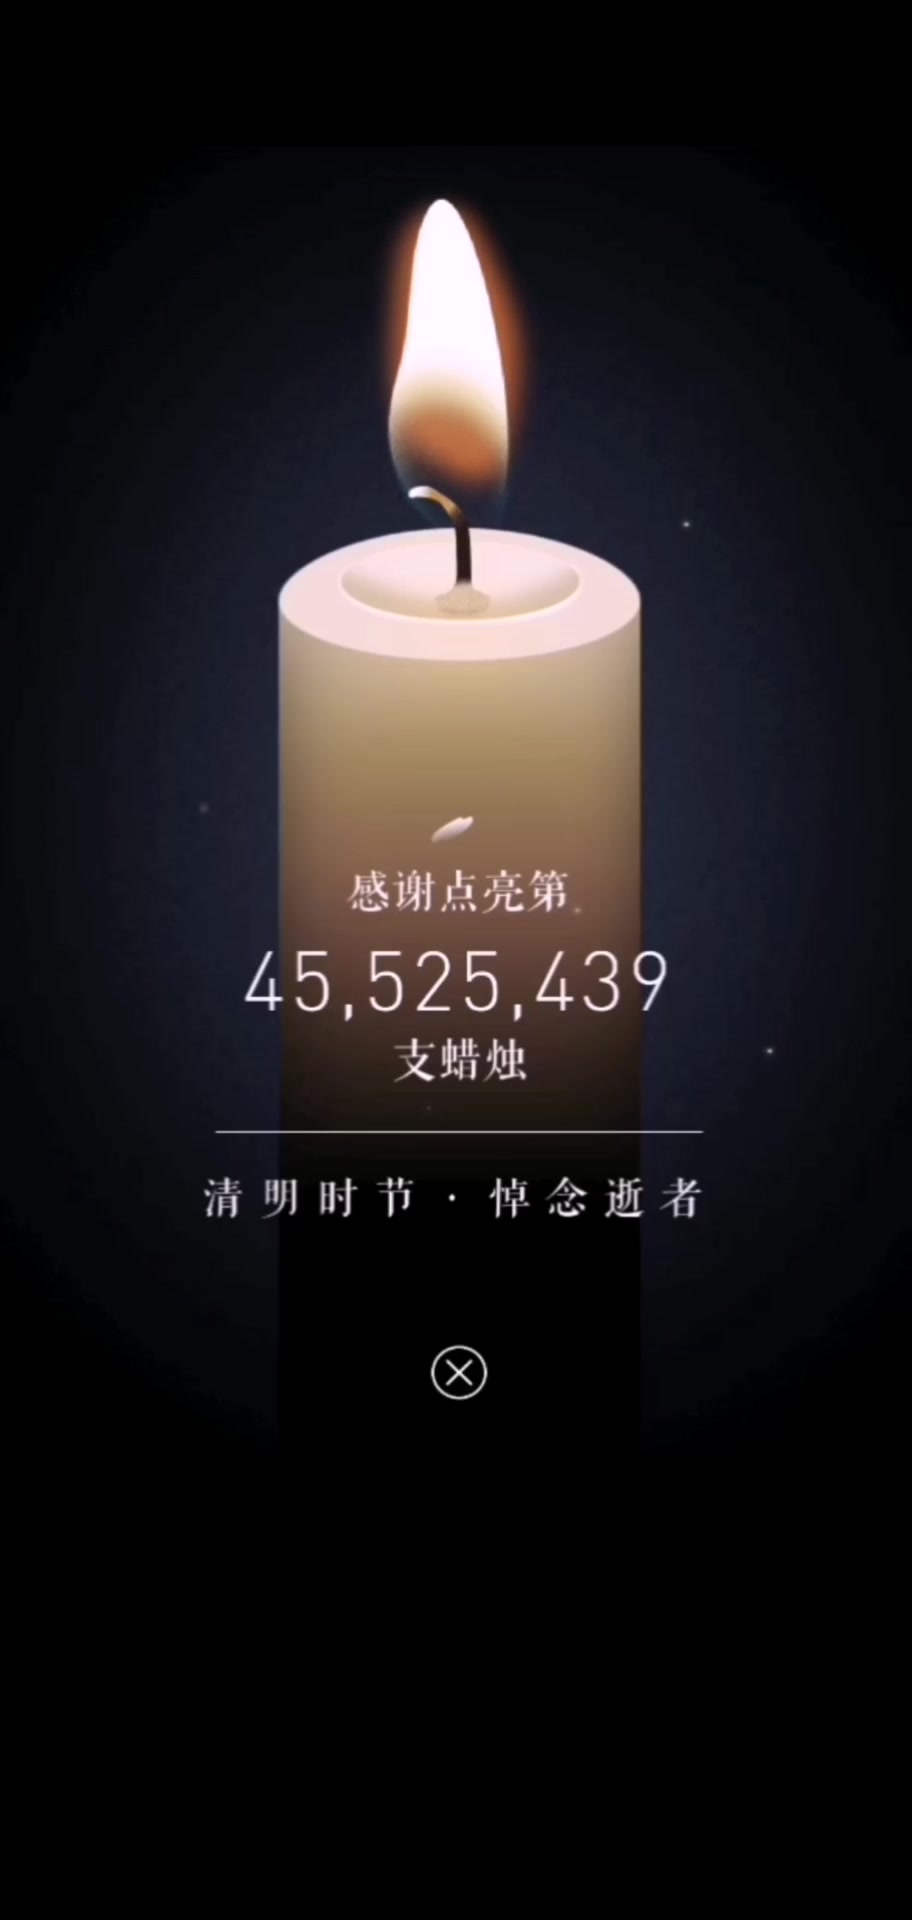 点亮第45525439支蜡烛,为逝者默哀!#全国哀悼日 #战胜疫情